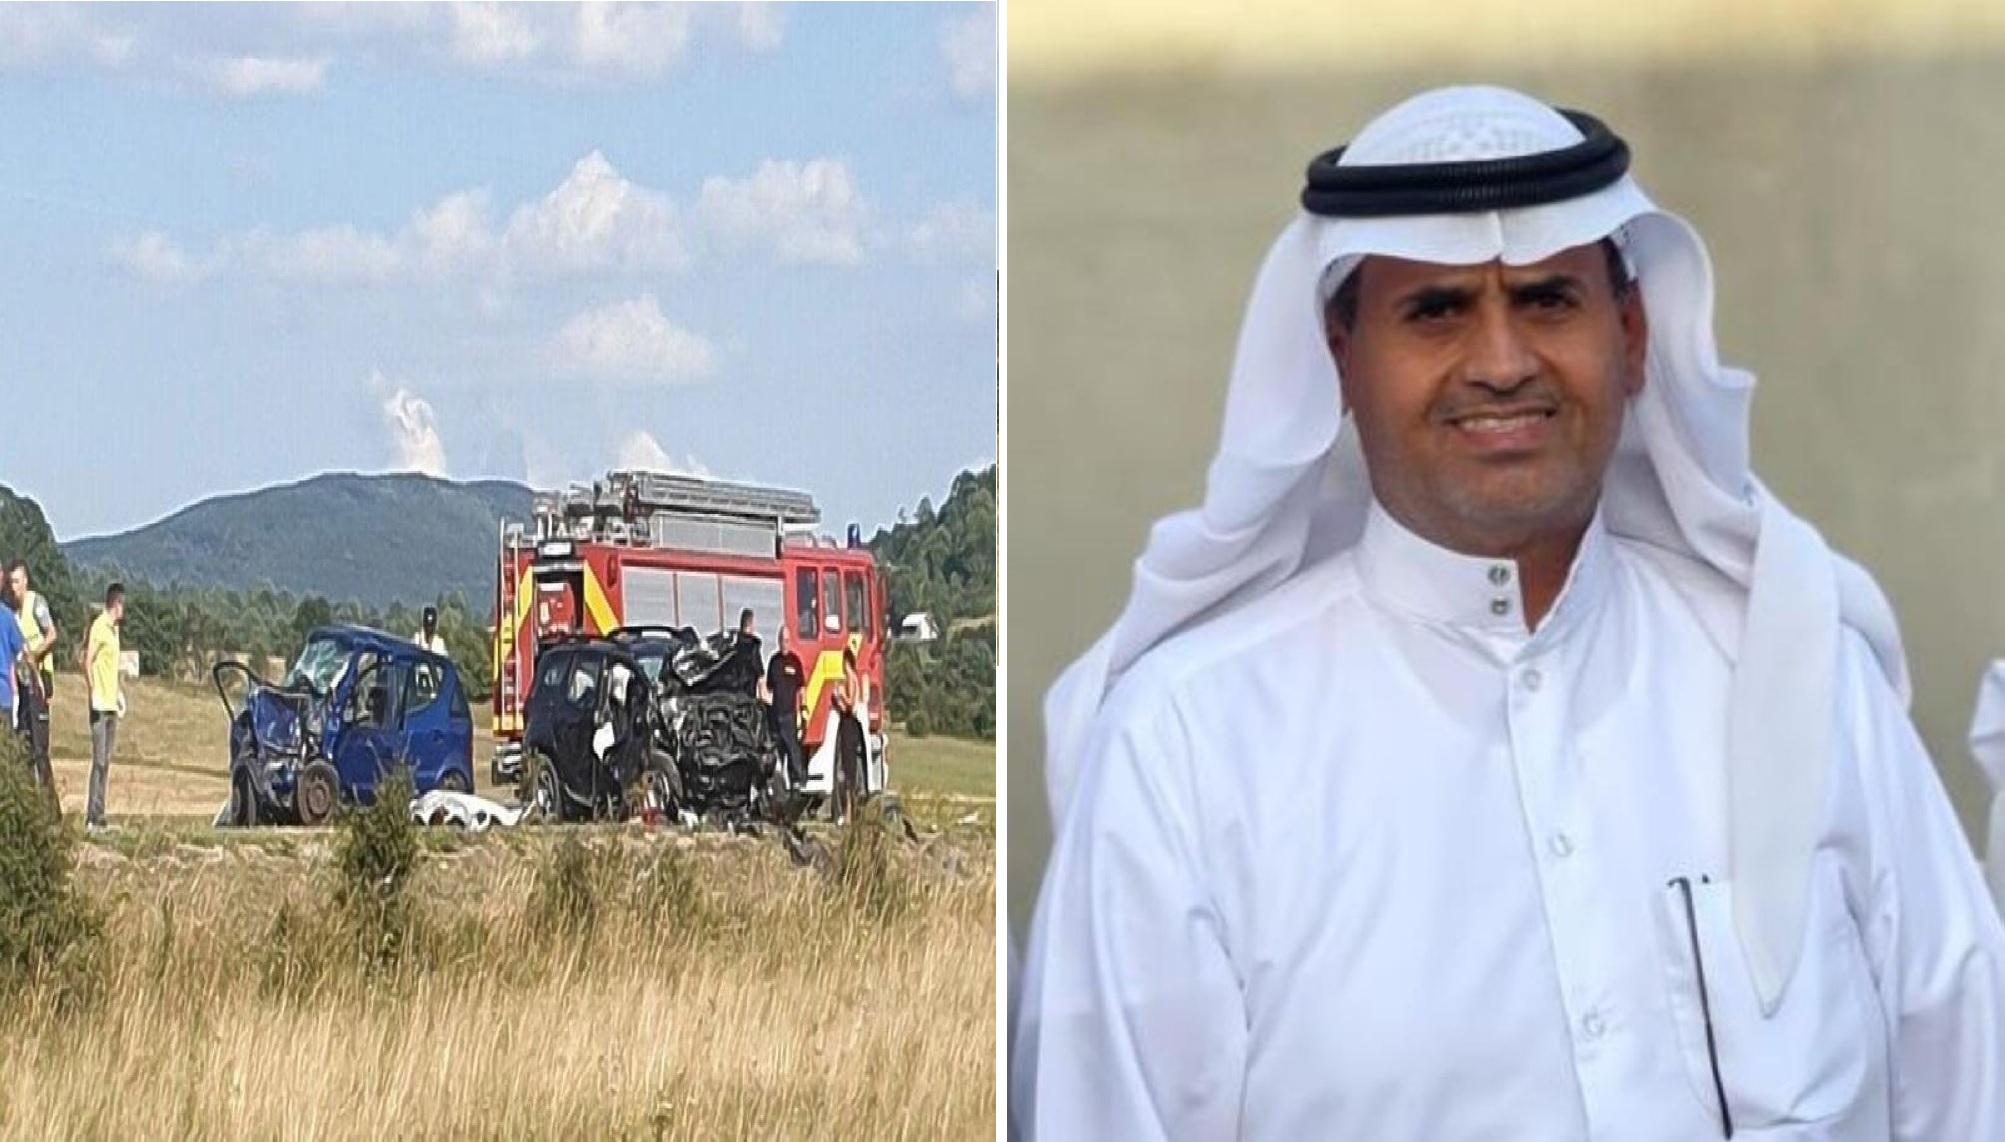 تفاصيل وفاة سائح سعودي وإصابة 2 من مرافقيه في حادث مروع بـ"البوسنة والهرسك"